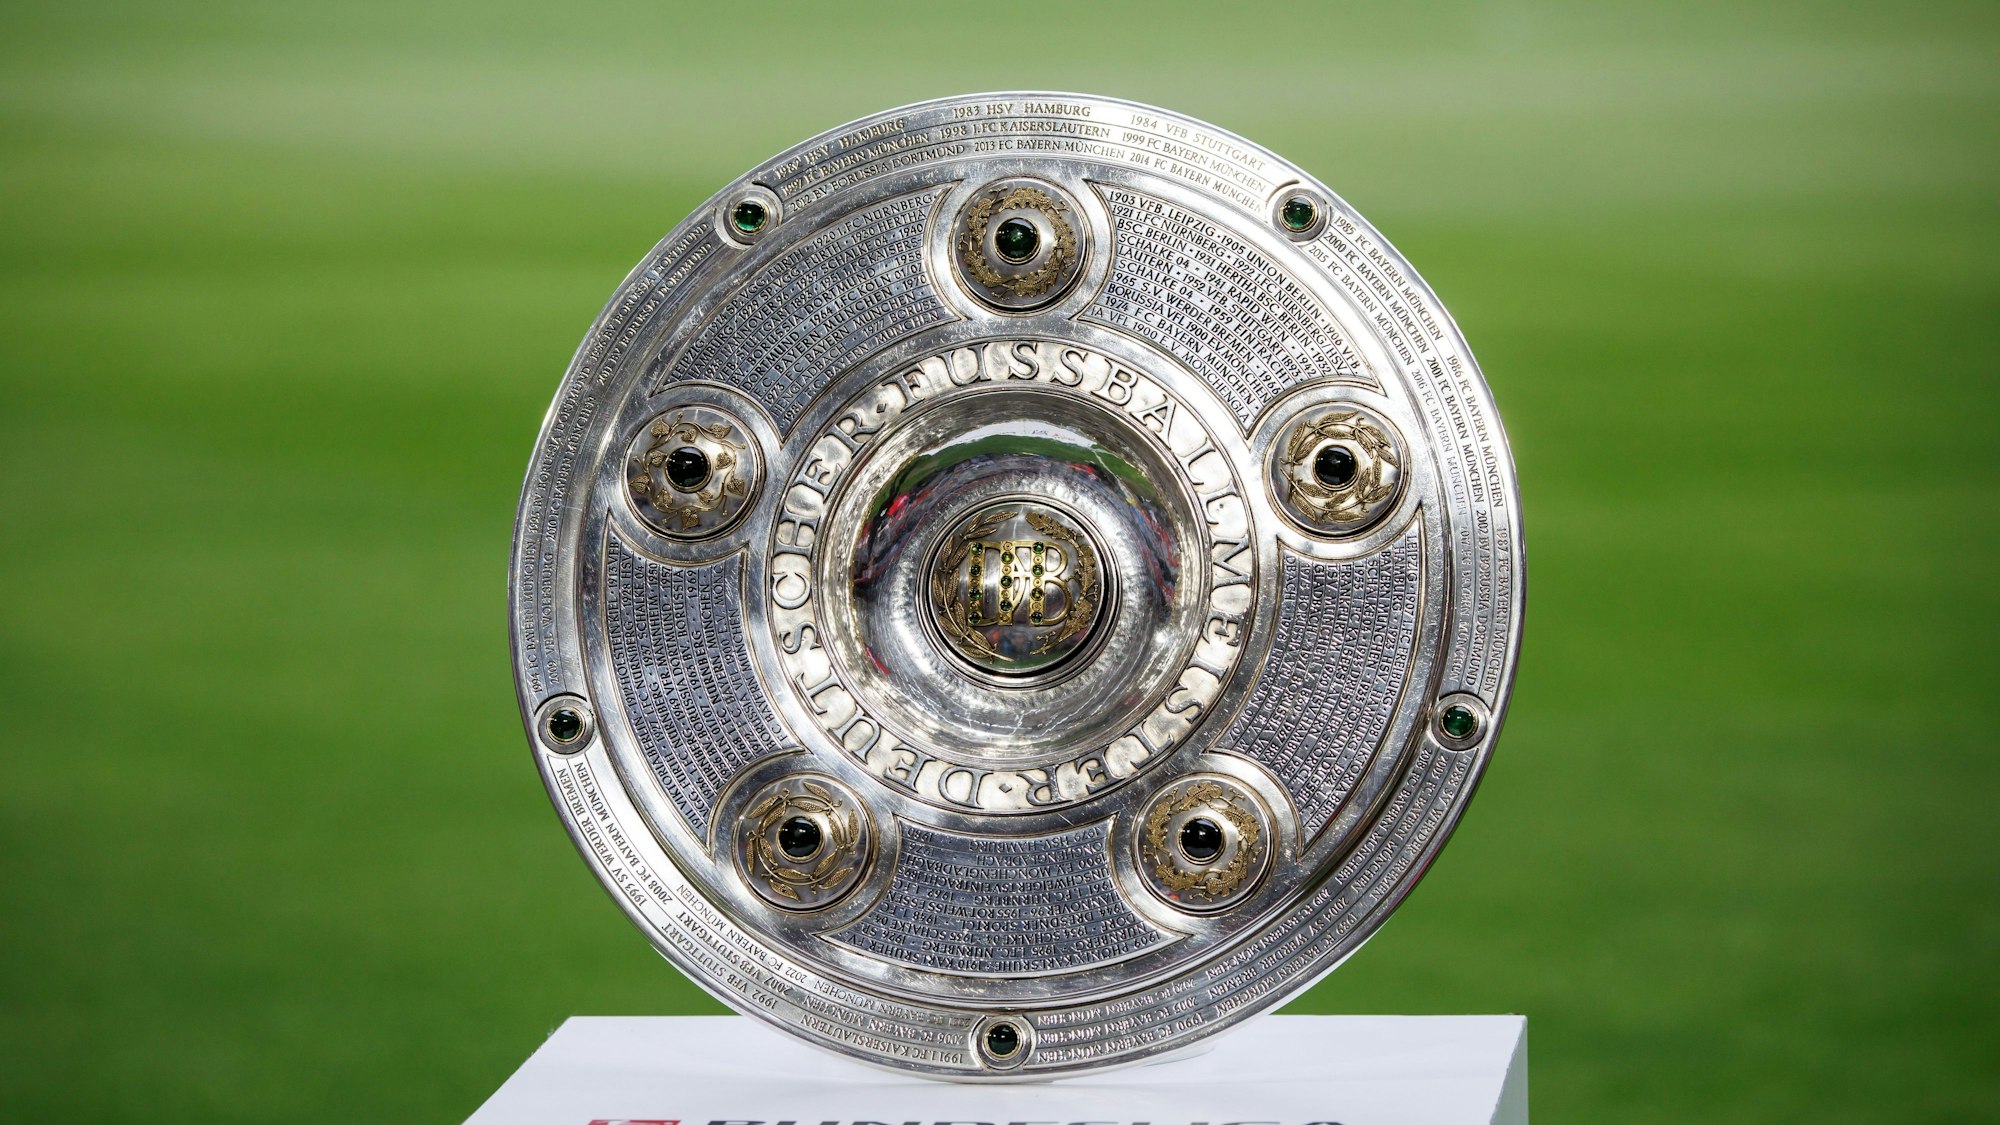 Die Meisterschale der Bundesliga steht auf dem Rasen.